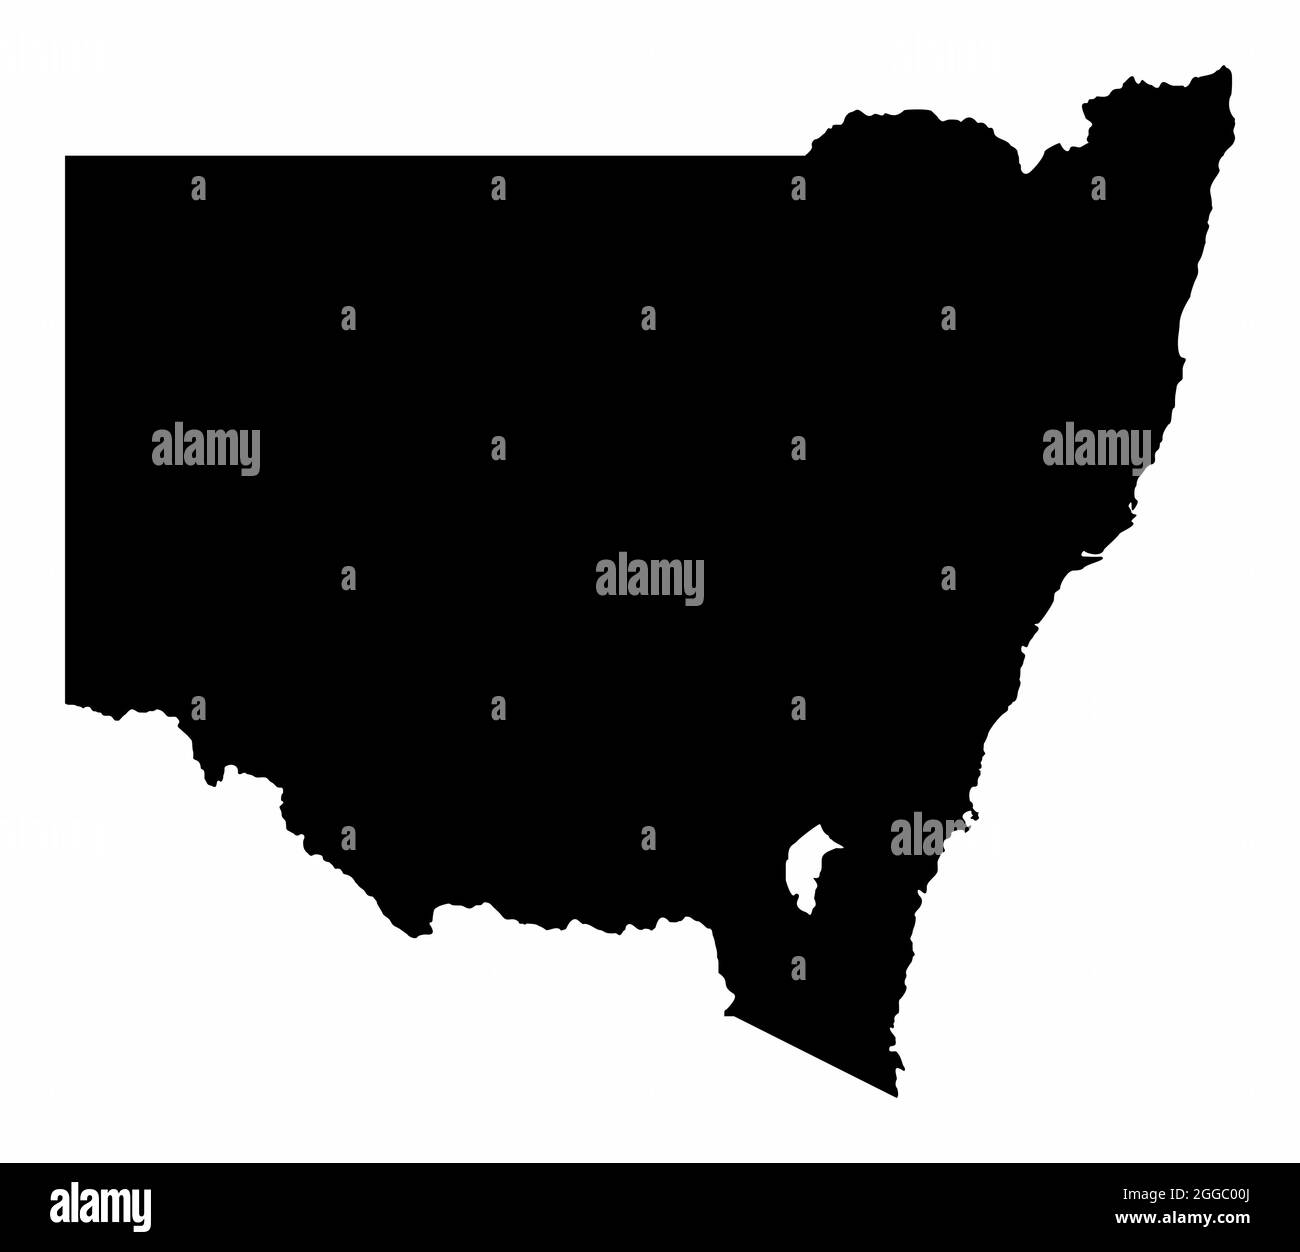 La carte de silhouette sombre de la Nouvelle-Galles du Sud est isolée sur fond blanc, en Australie Illustration de Vecteur